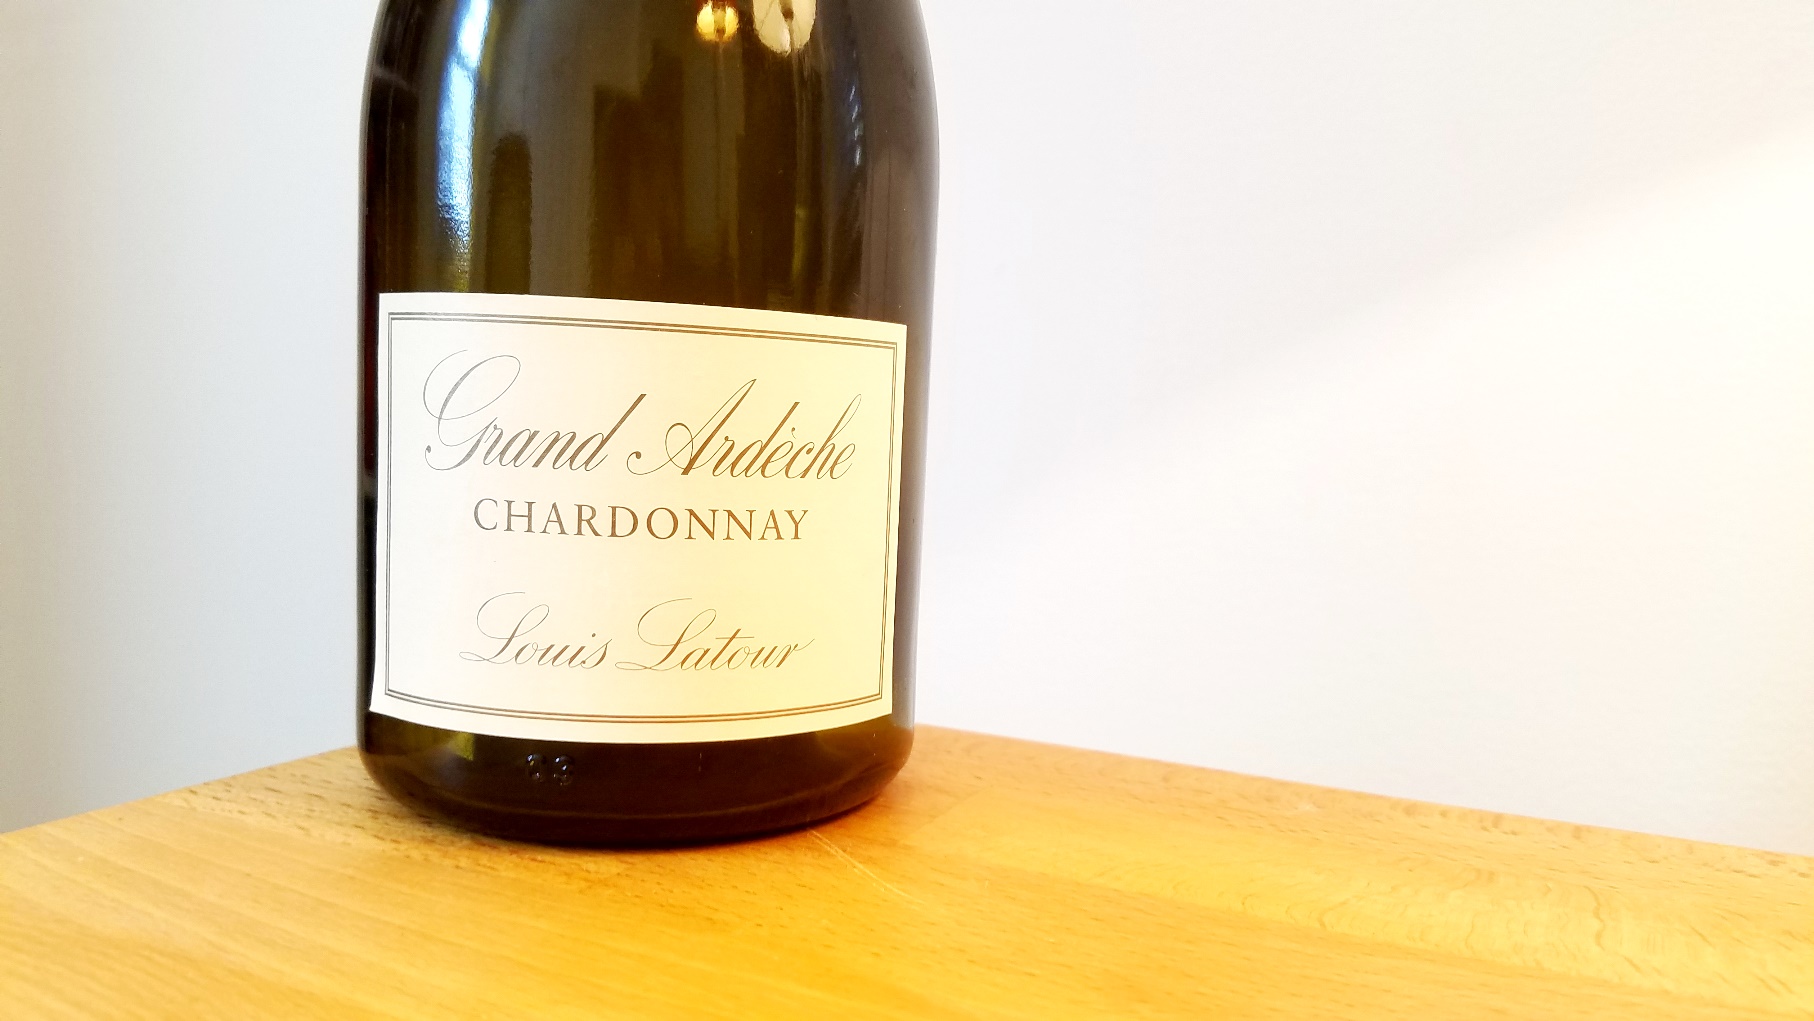 Maison Louis Latour, Grande Ardèche Chardonnay 2017, IGP Coteaux de l'Ardèche, France, Wine Casual